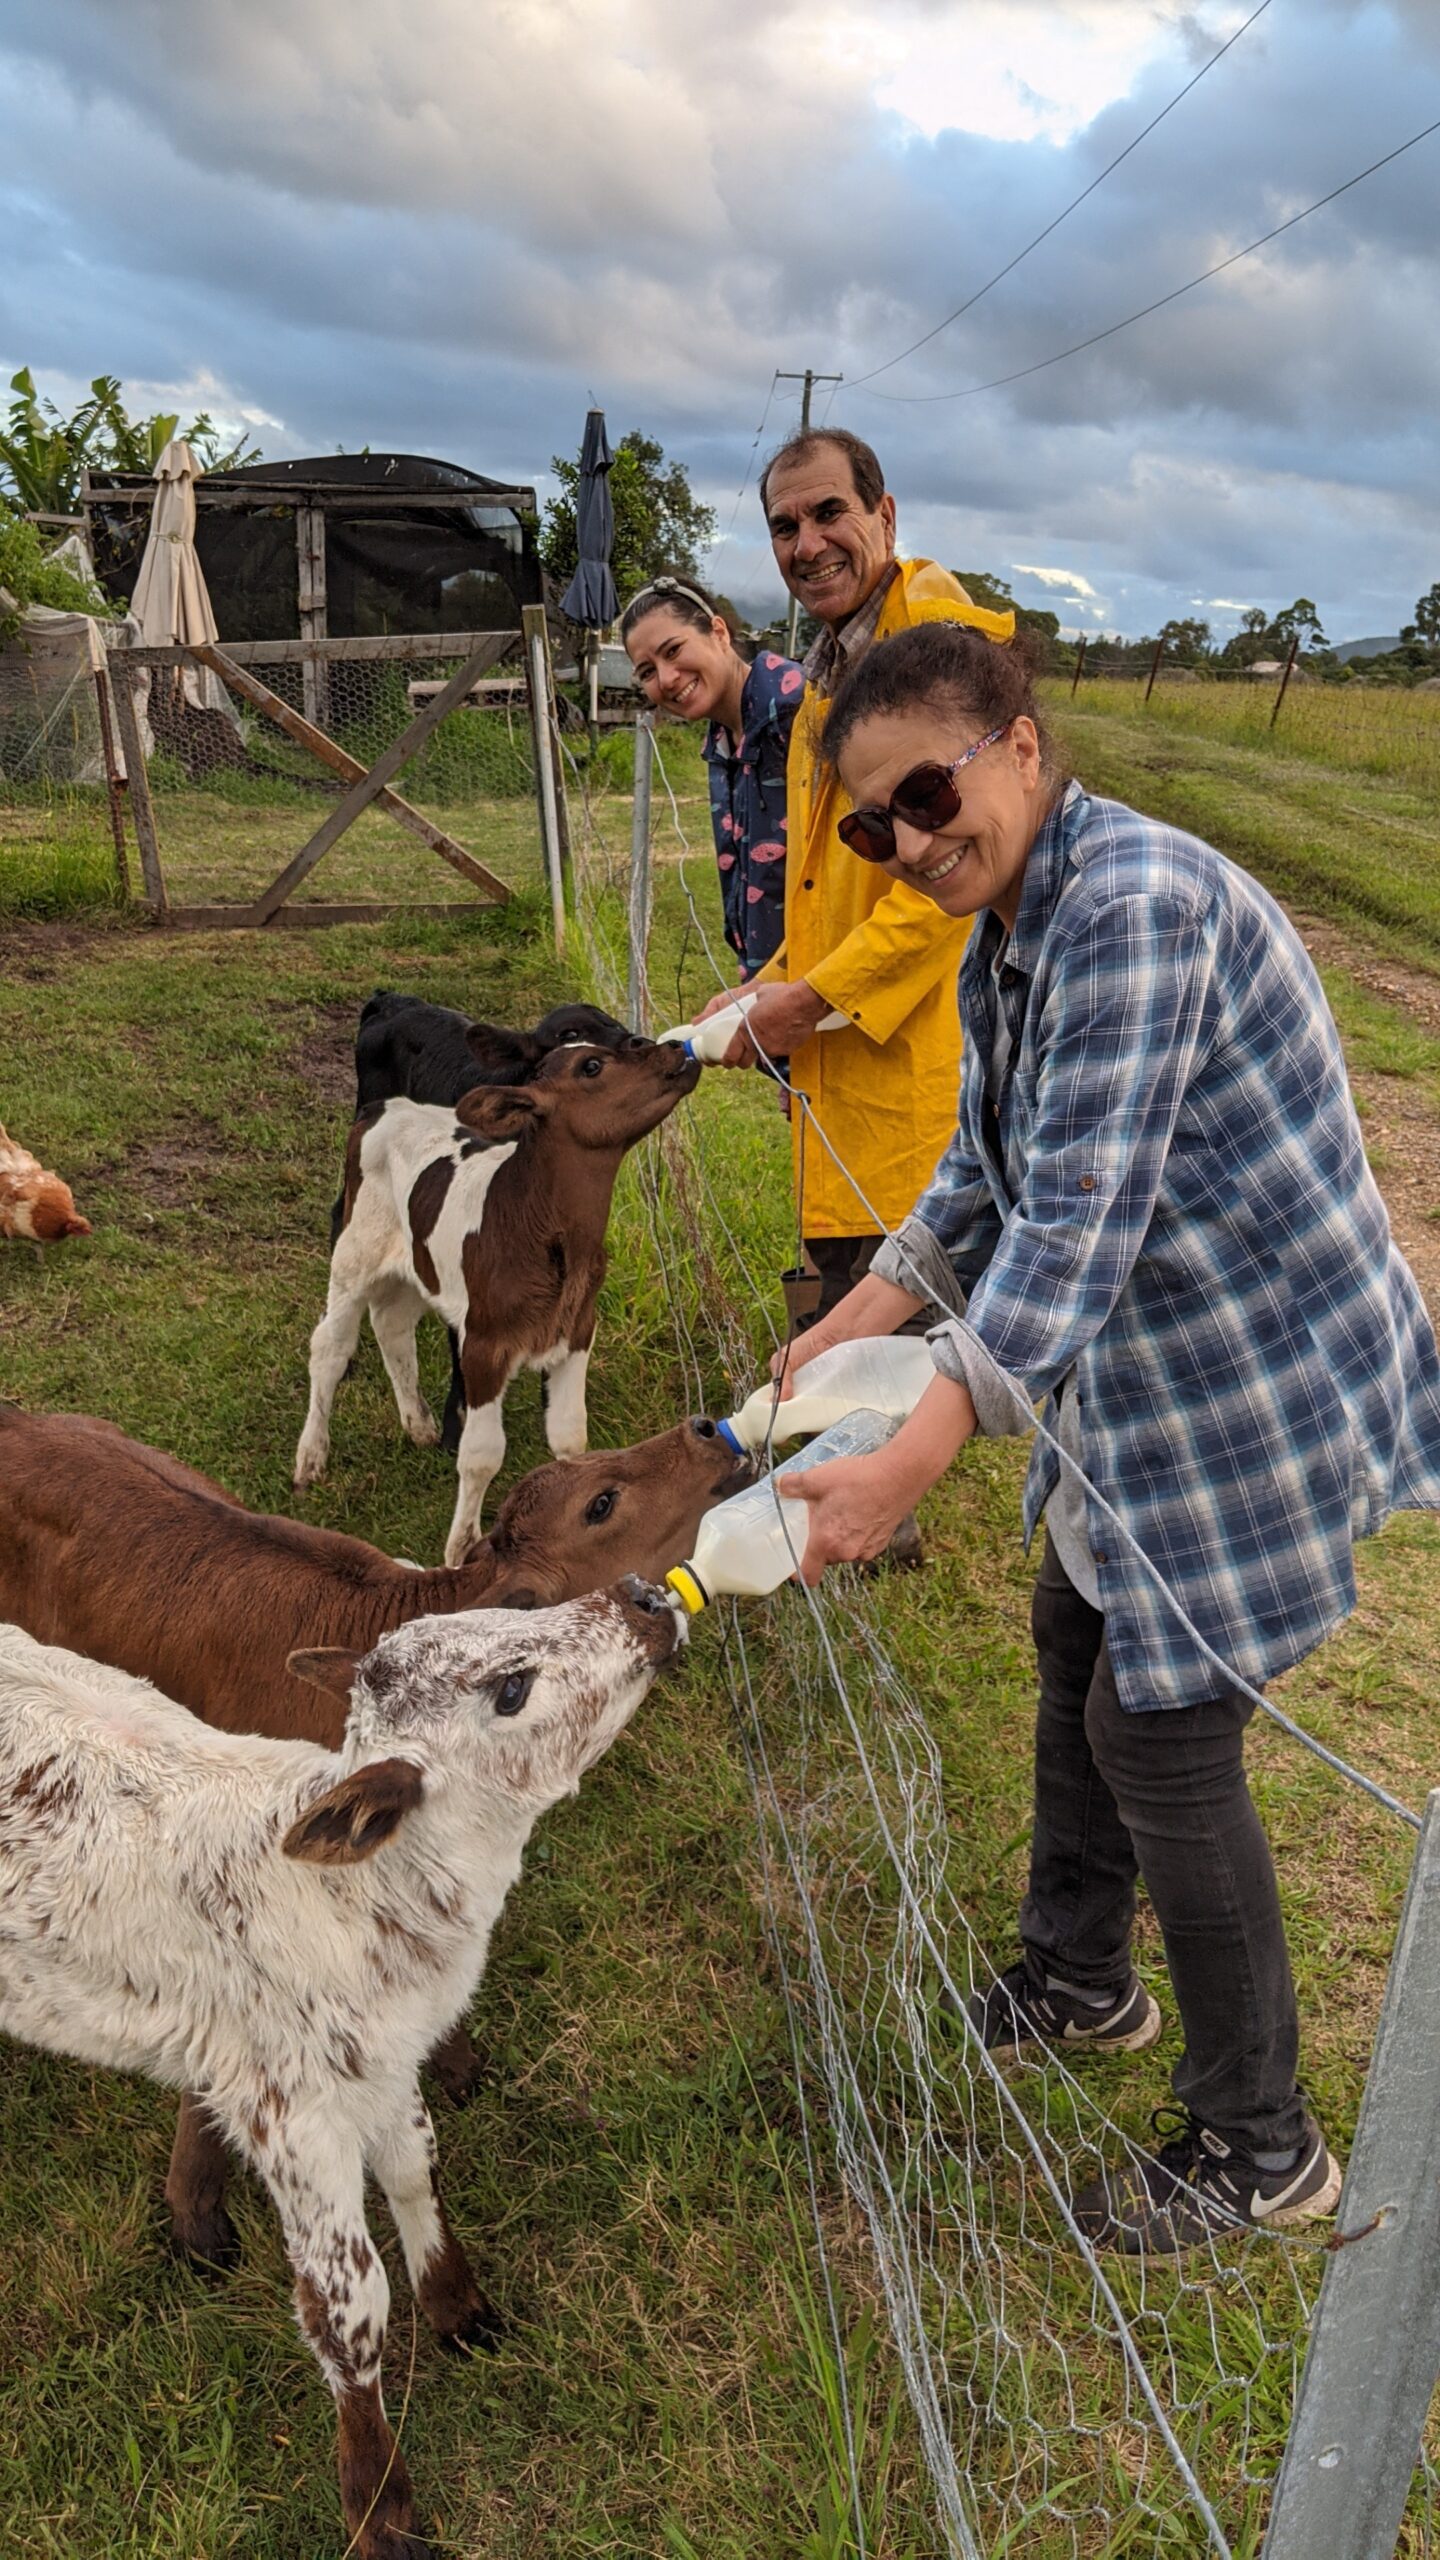 Feeding calves with milk bottles